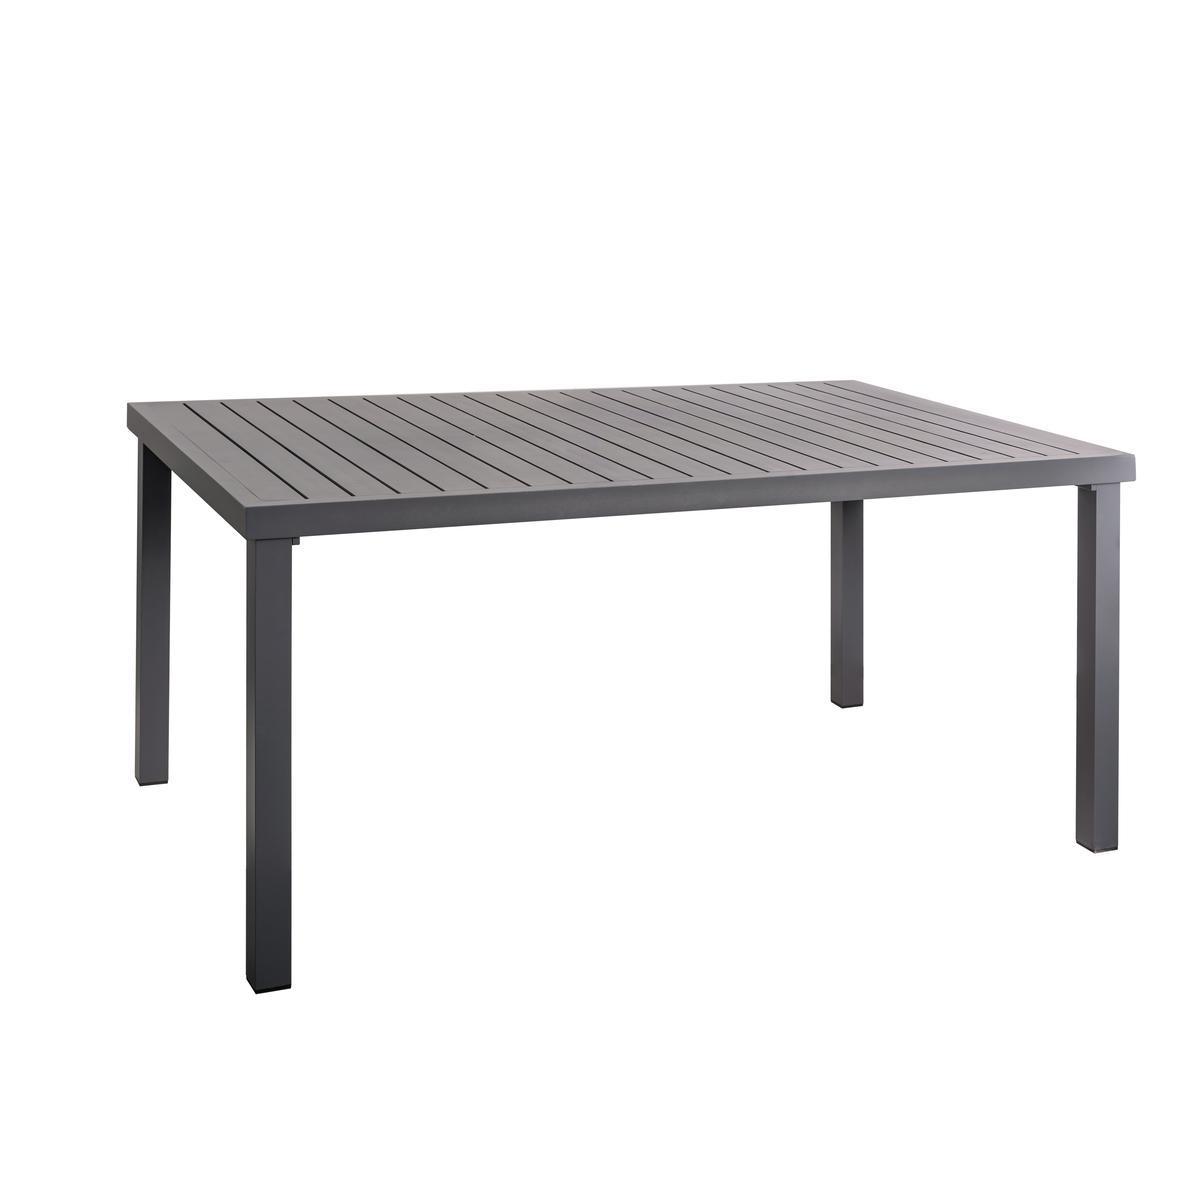 Table Cali - L 150 x H 74 x l 90 cm - Gris anthracite - MOOREA